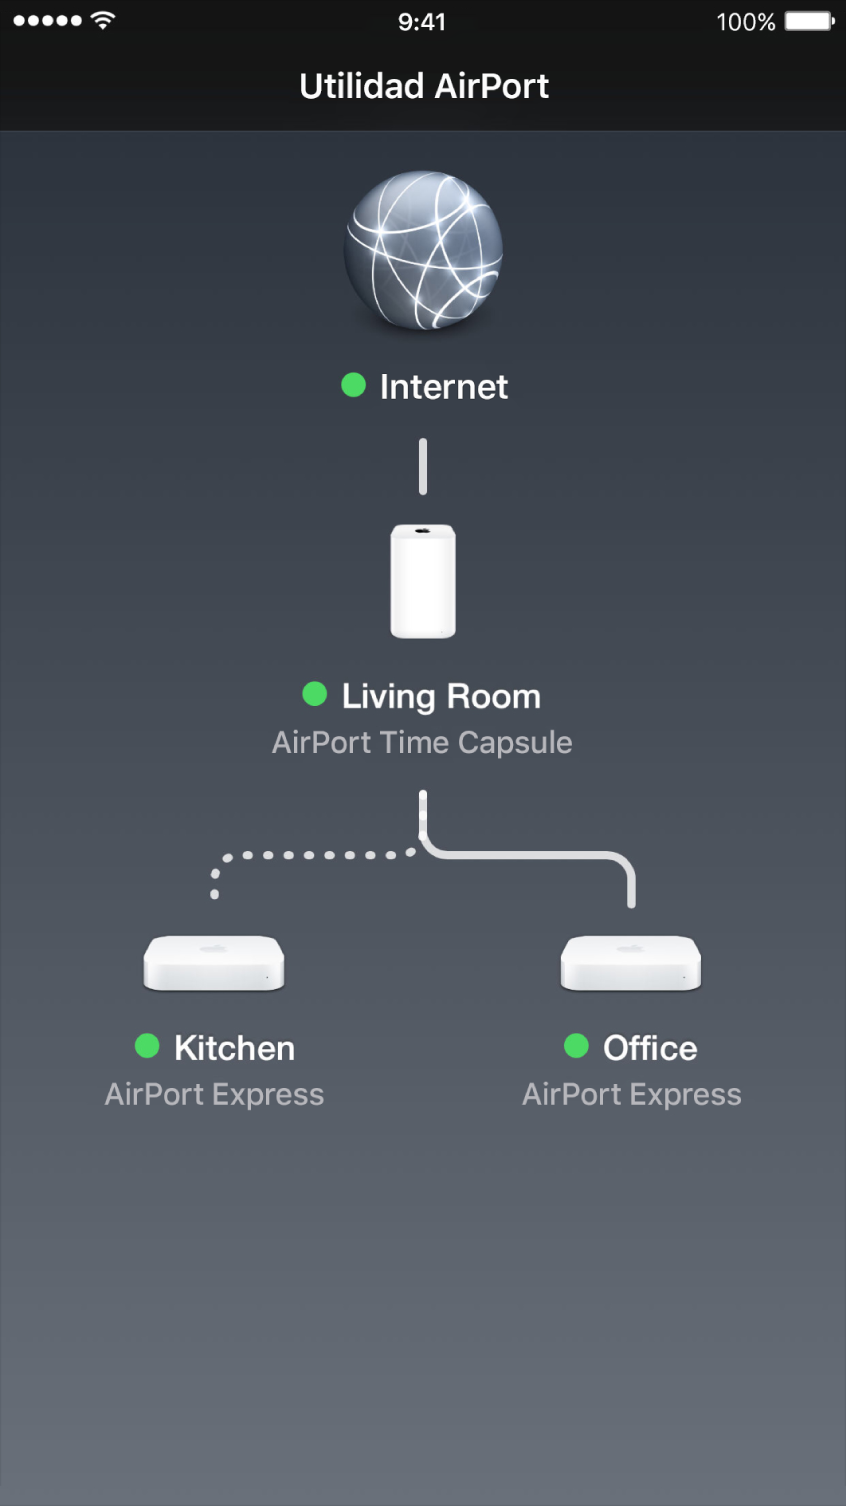 El resumen gráfico en Utilidad AirPort para iOS.